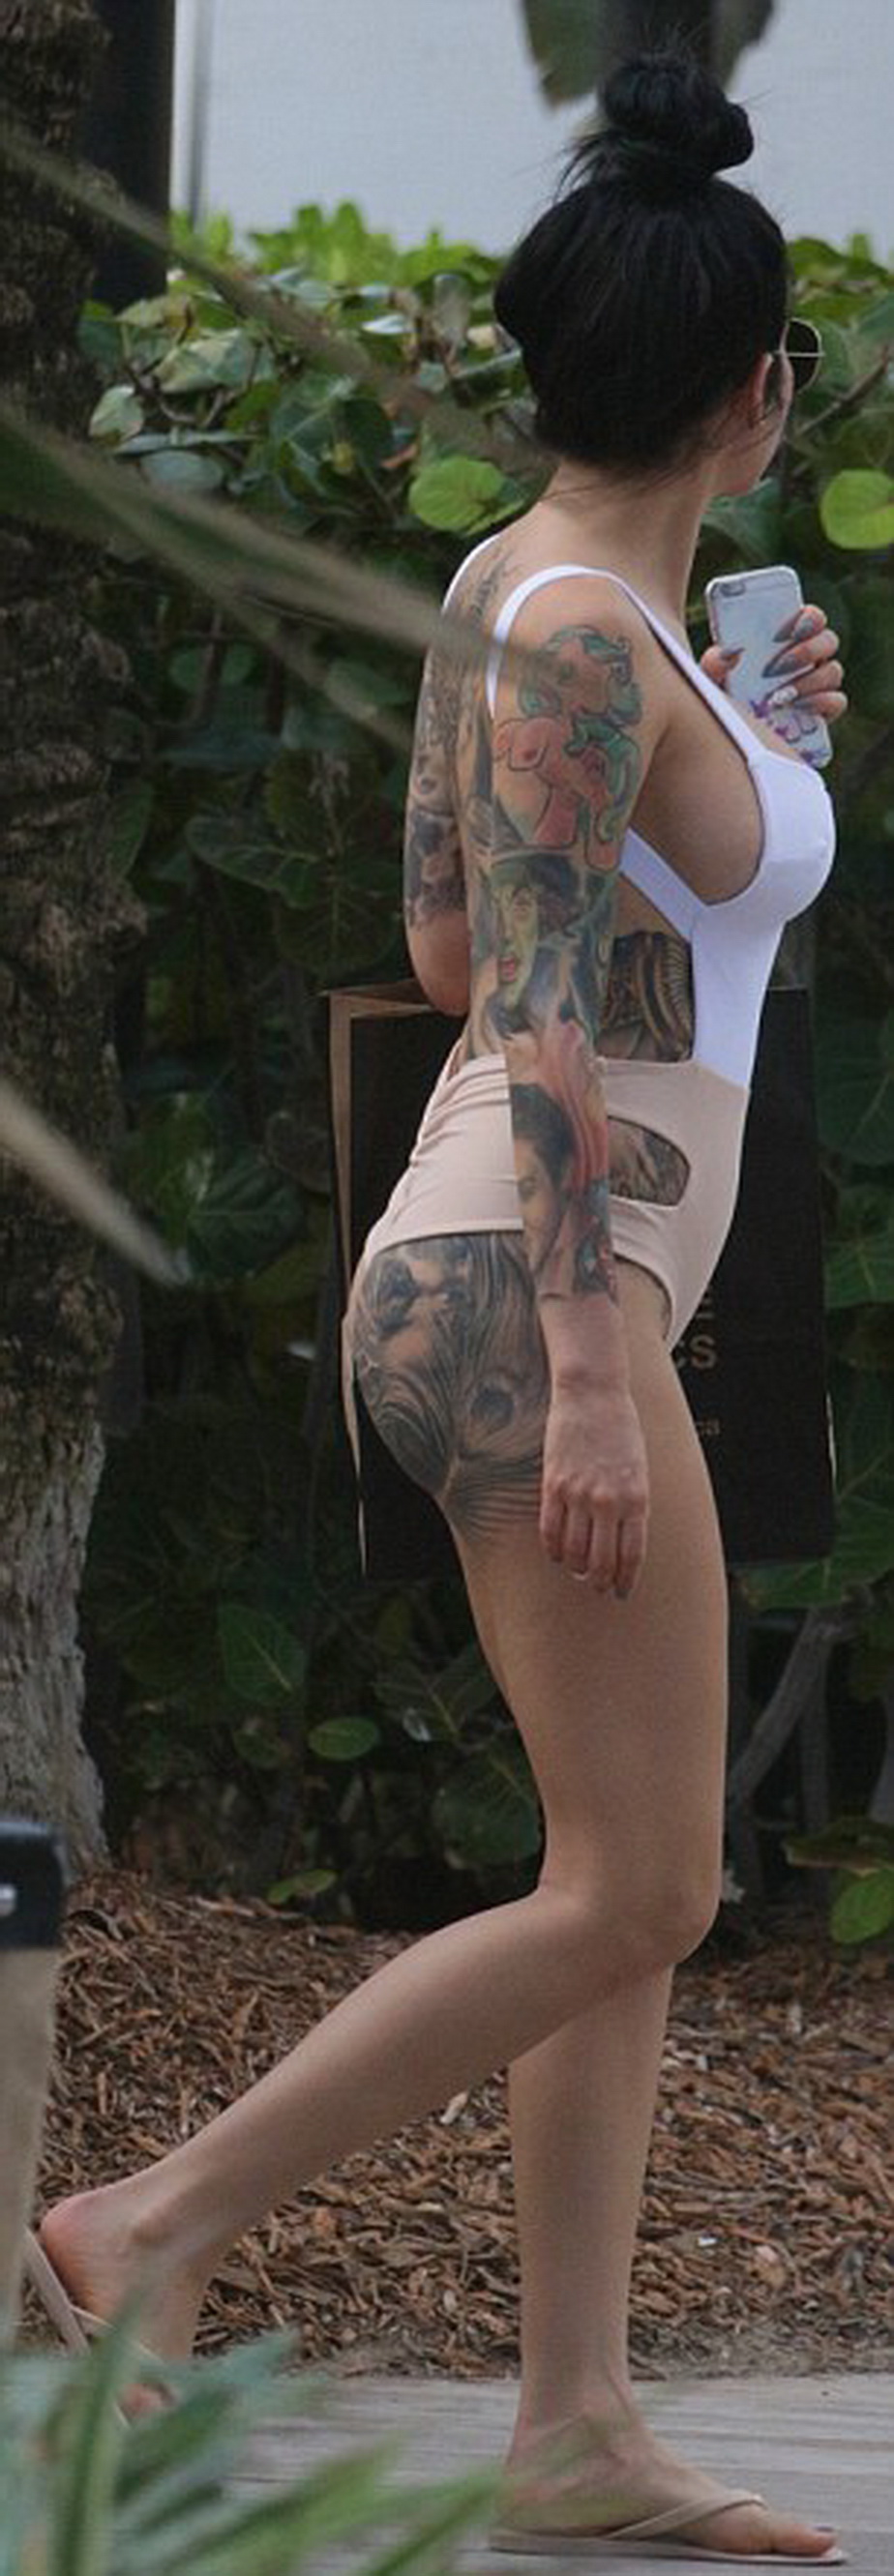 Tatuajele ei au fost atracţia plajei! Bruneta care a încins imaginaţia în Miami 